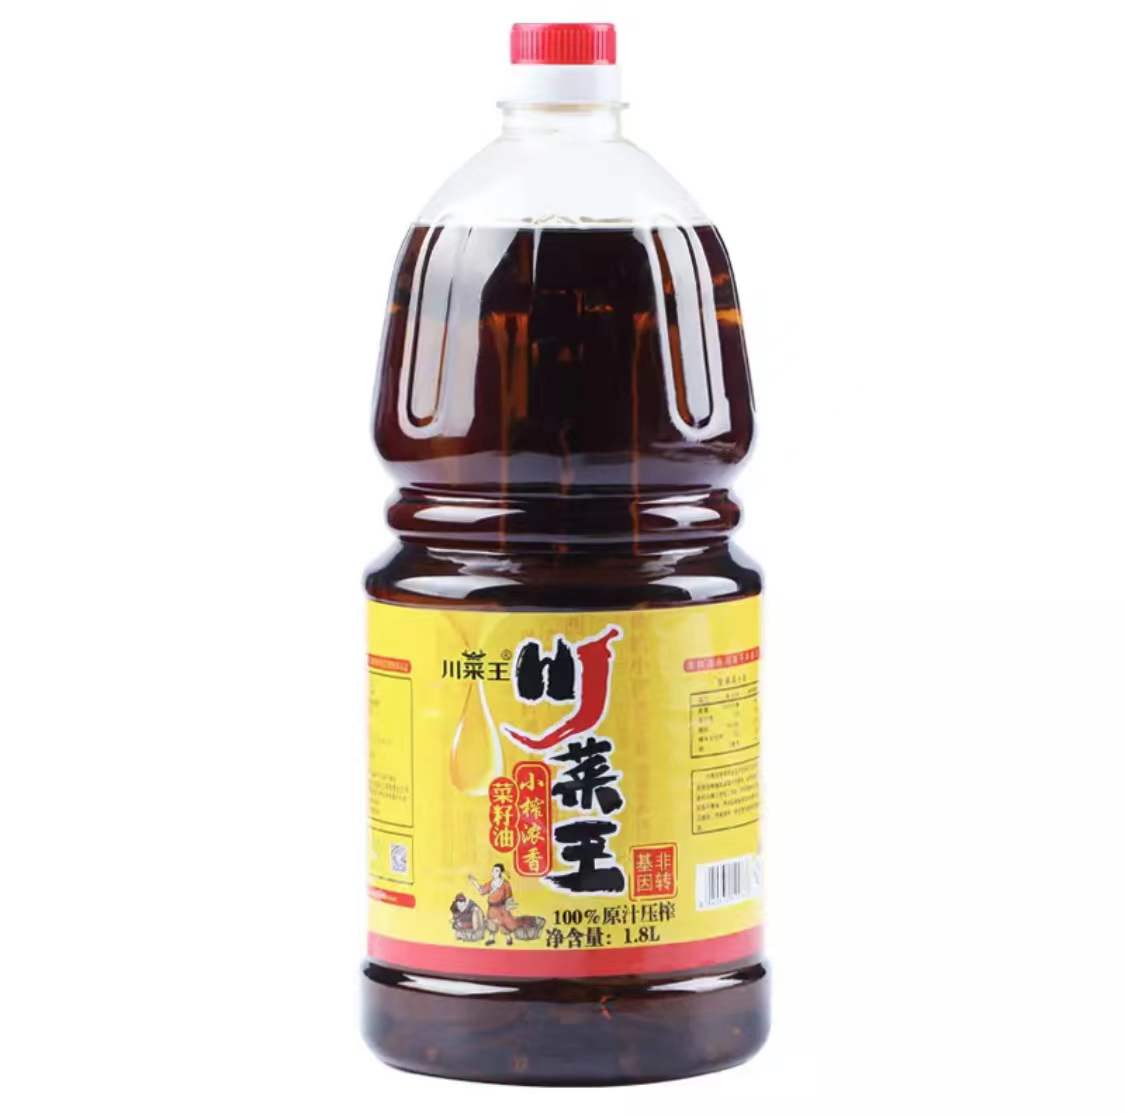 川菜王小榨浓香菜籽油 1.8L